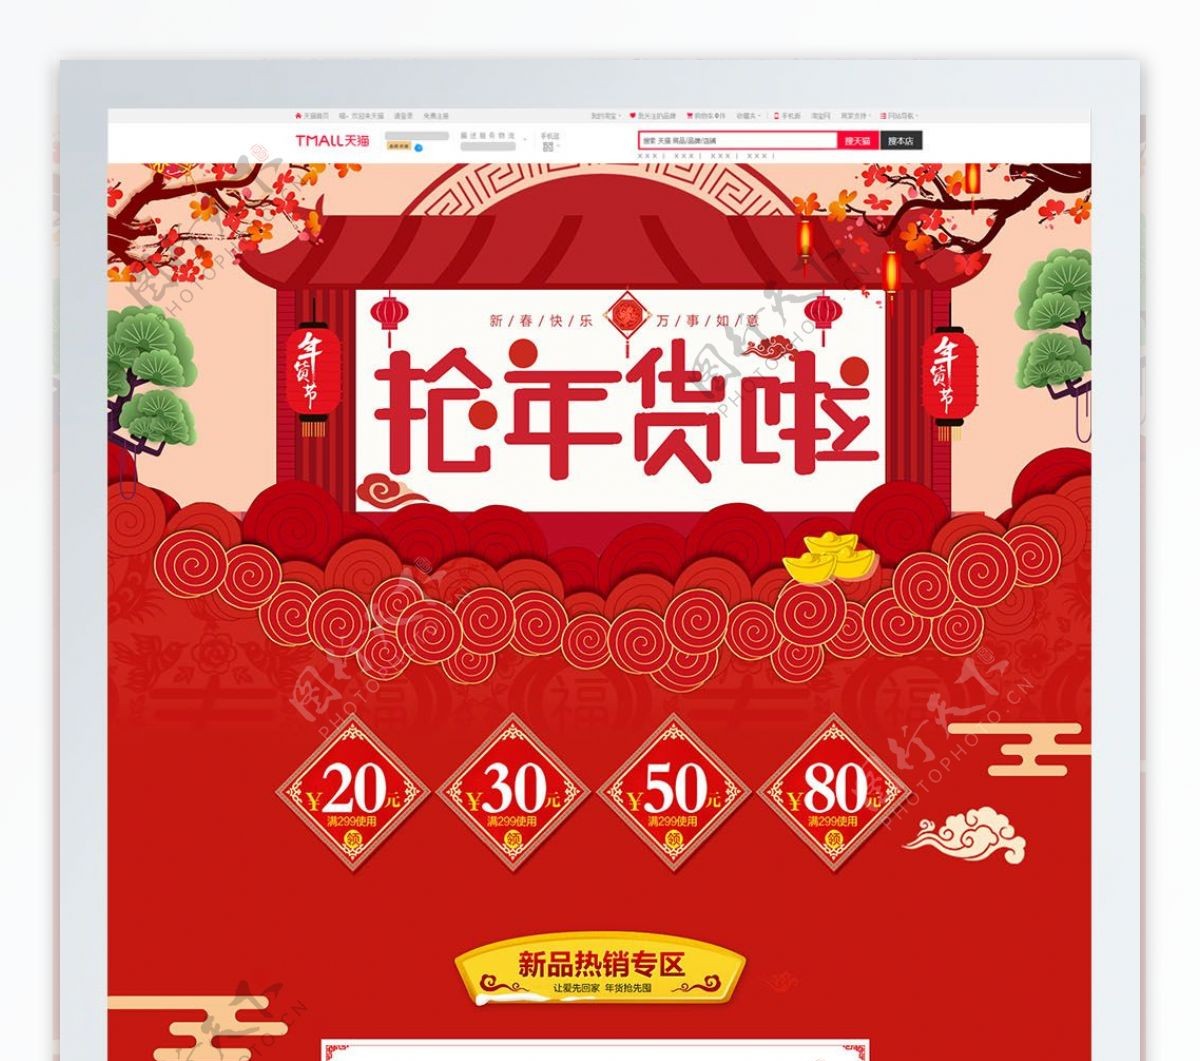 红色喜庆电商促销年货节淘宝首页促销模板